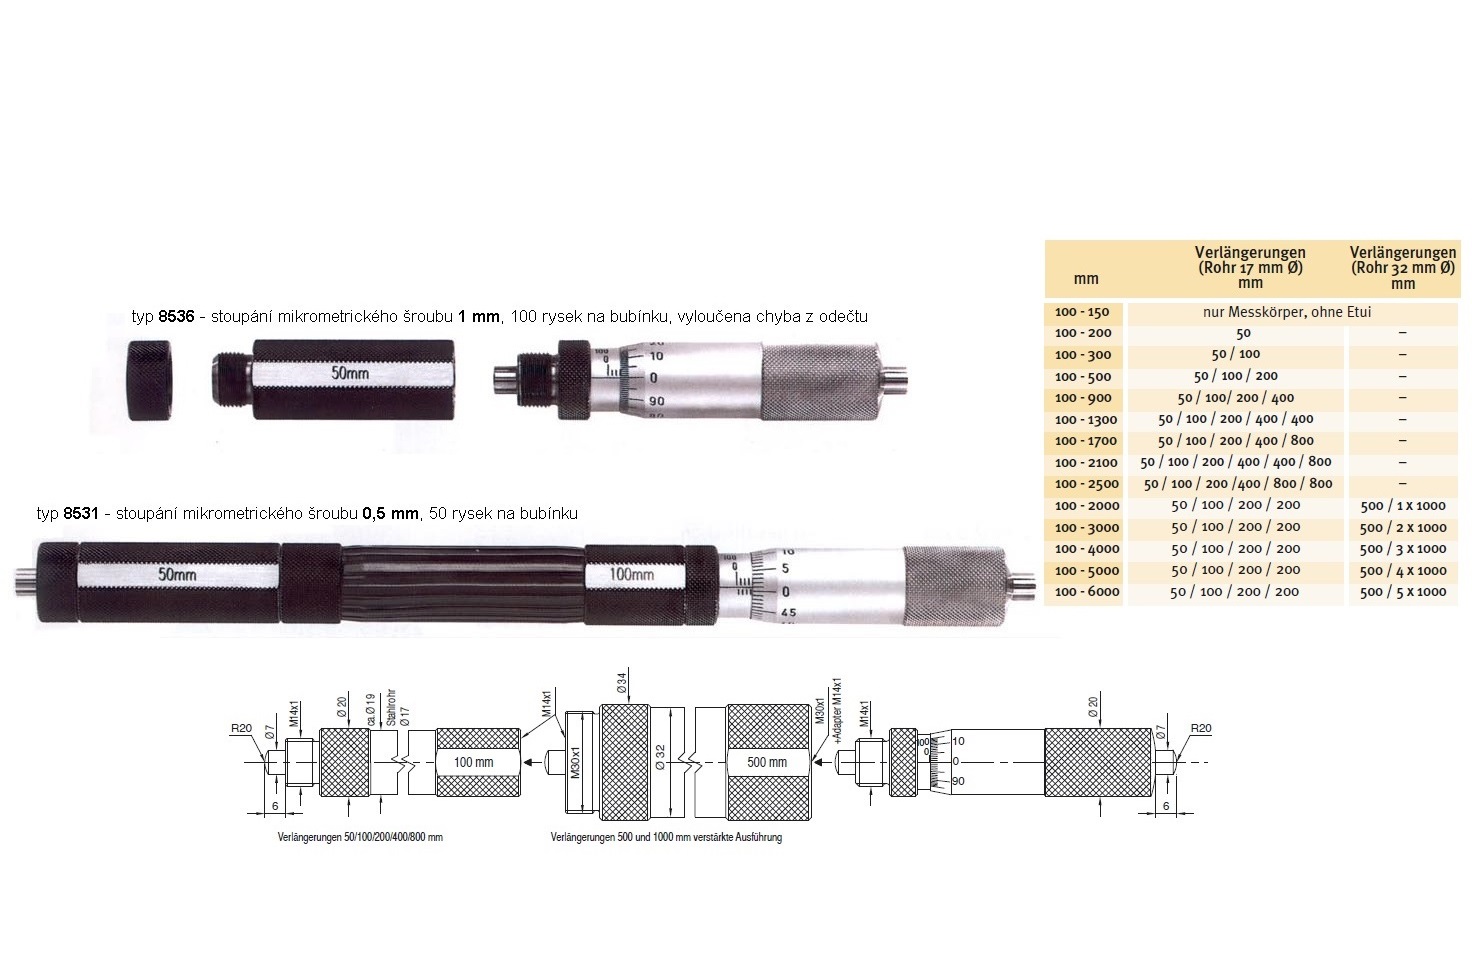 Mikrometrický odpich skládací HARTIG 100-2000 mm, stoupání šroubu 1 mm, doteky tvrdokov